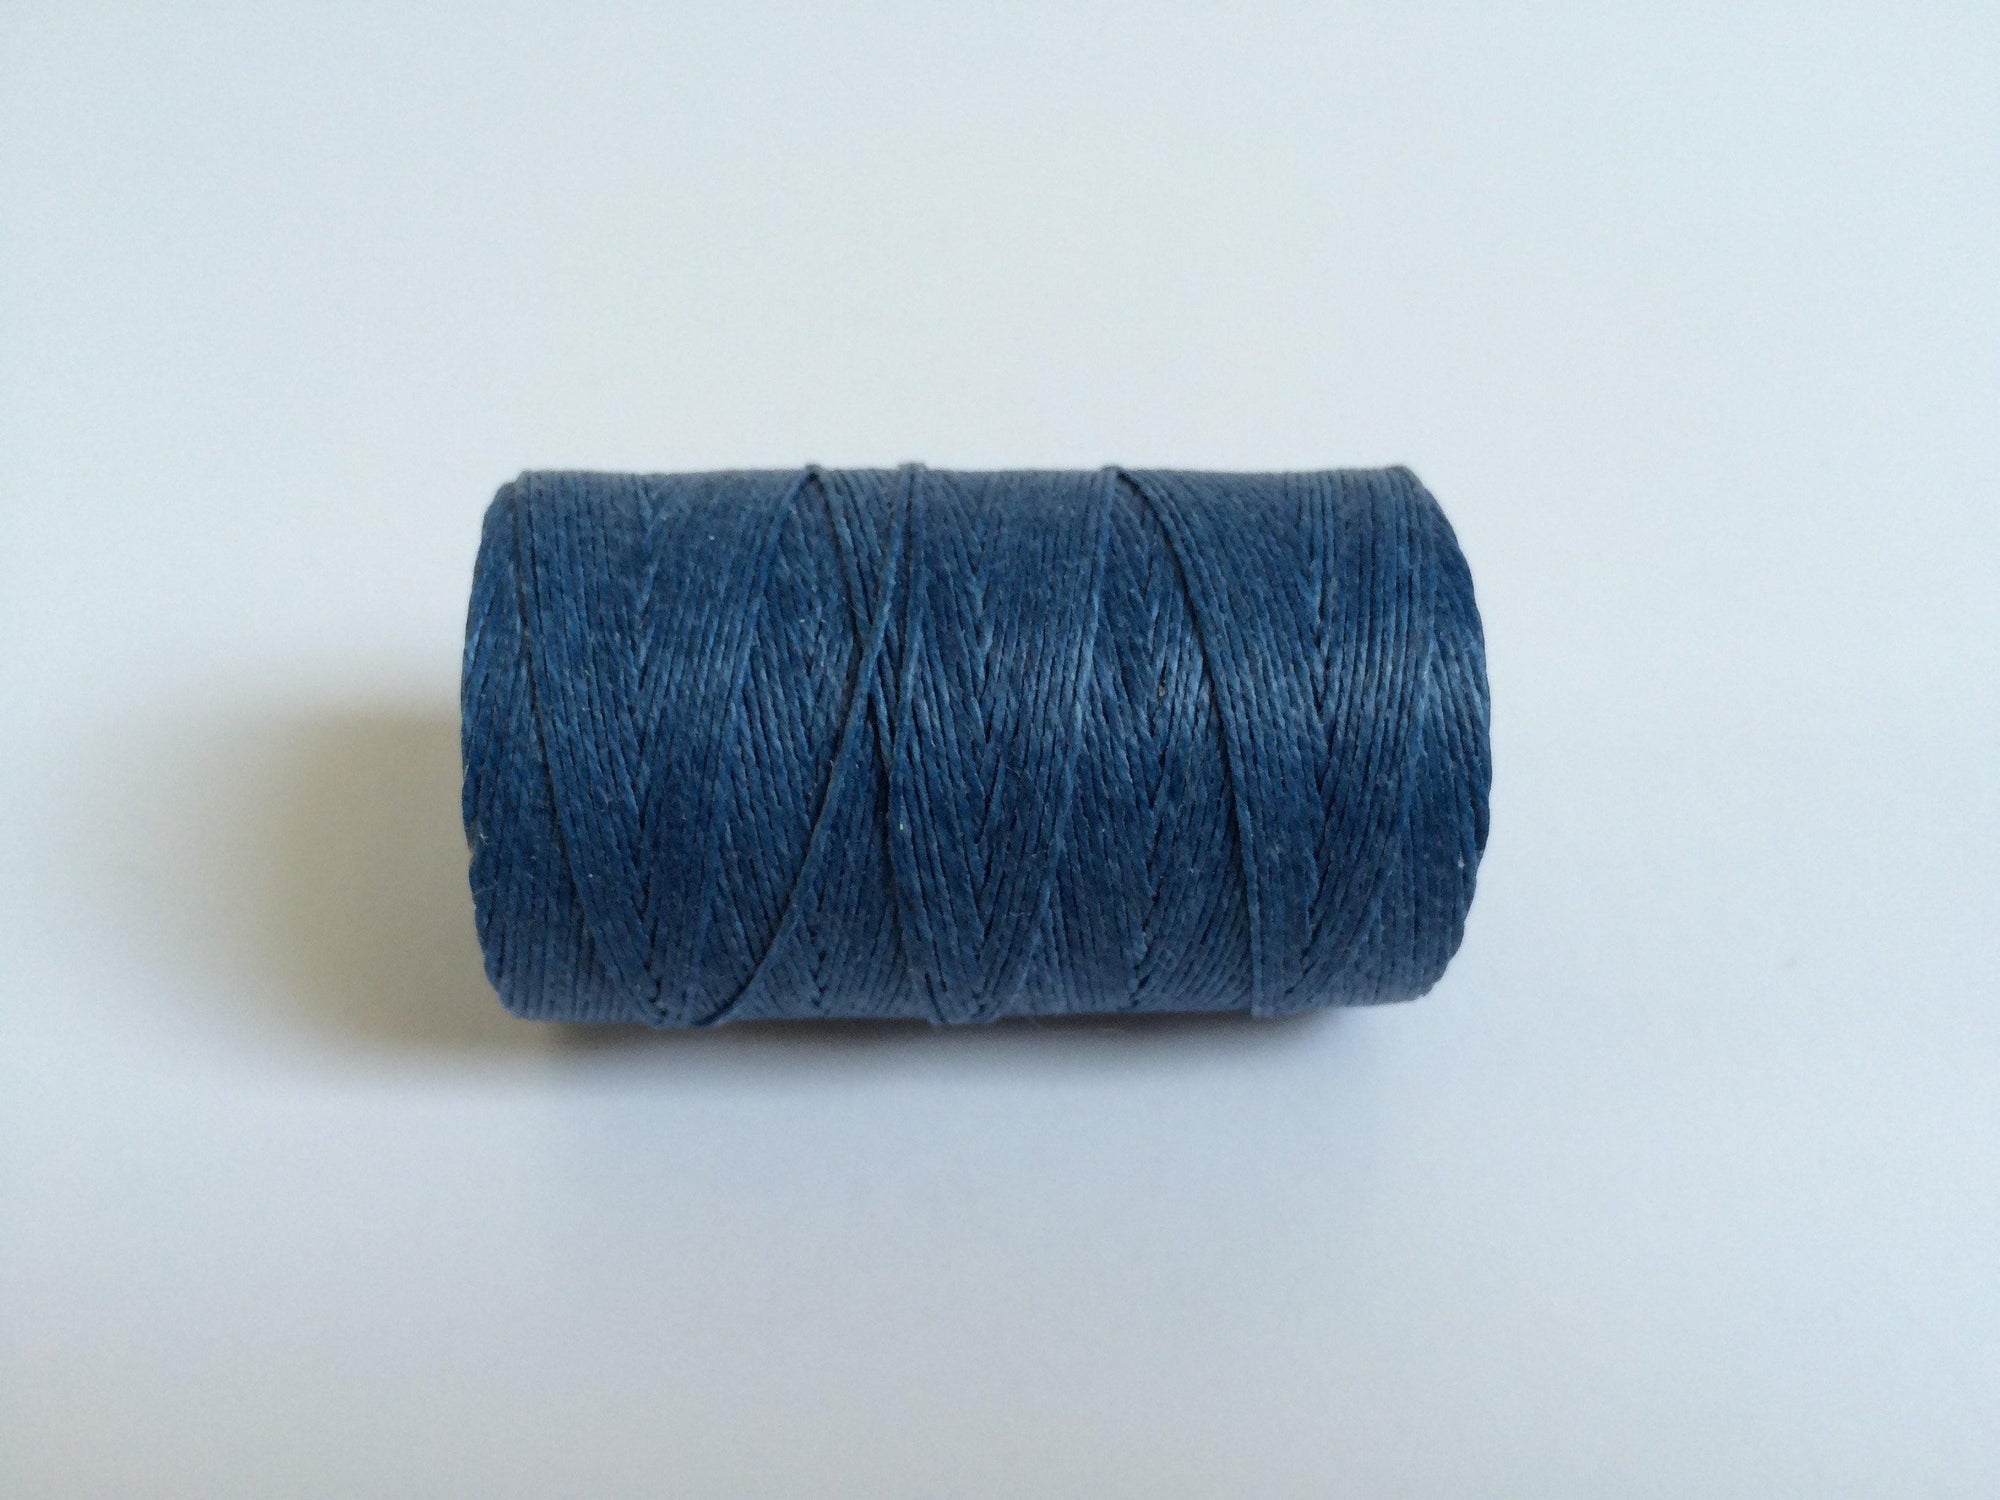 gewachstes Leinengarn / Irish Waxed Linen Farbe 26 royal blue 0.5 mm